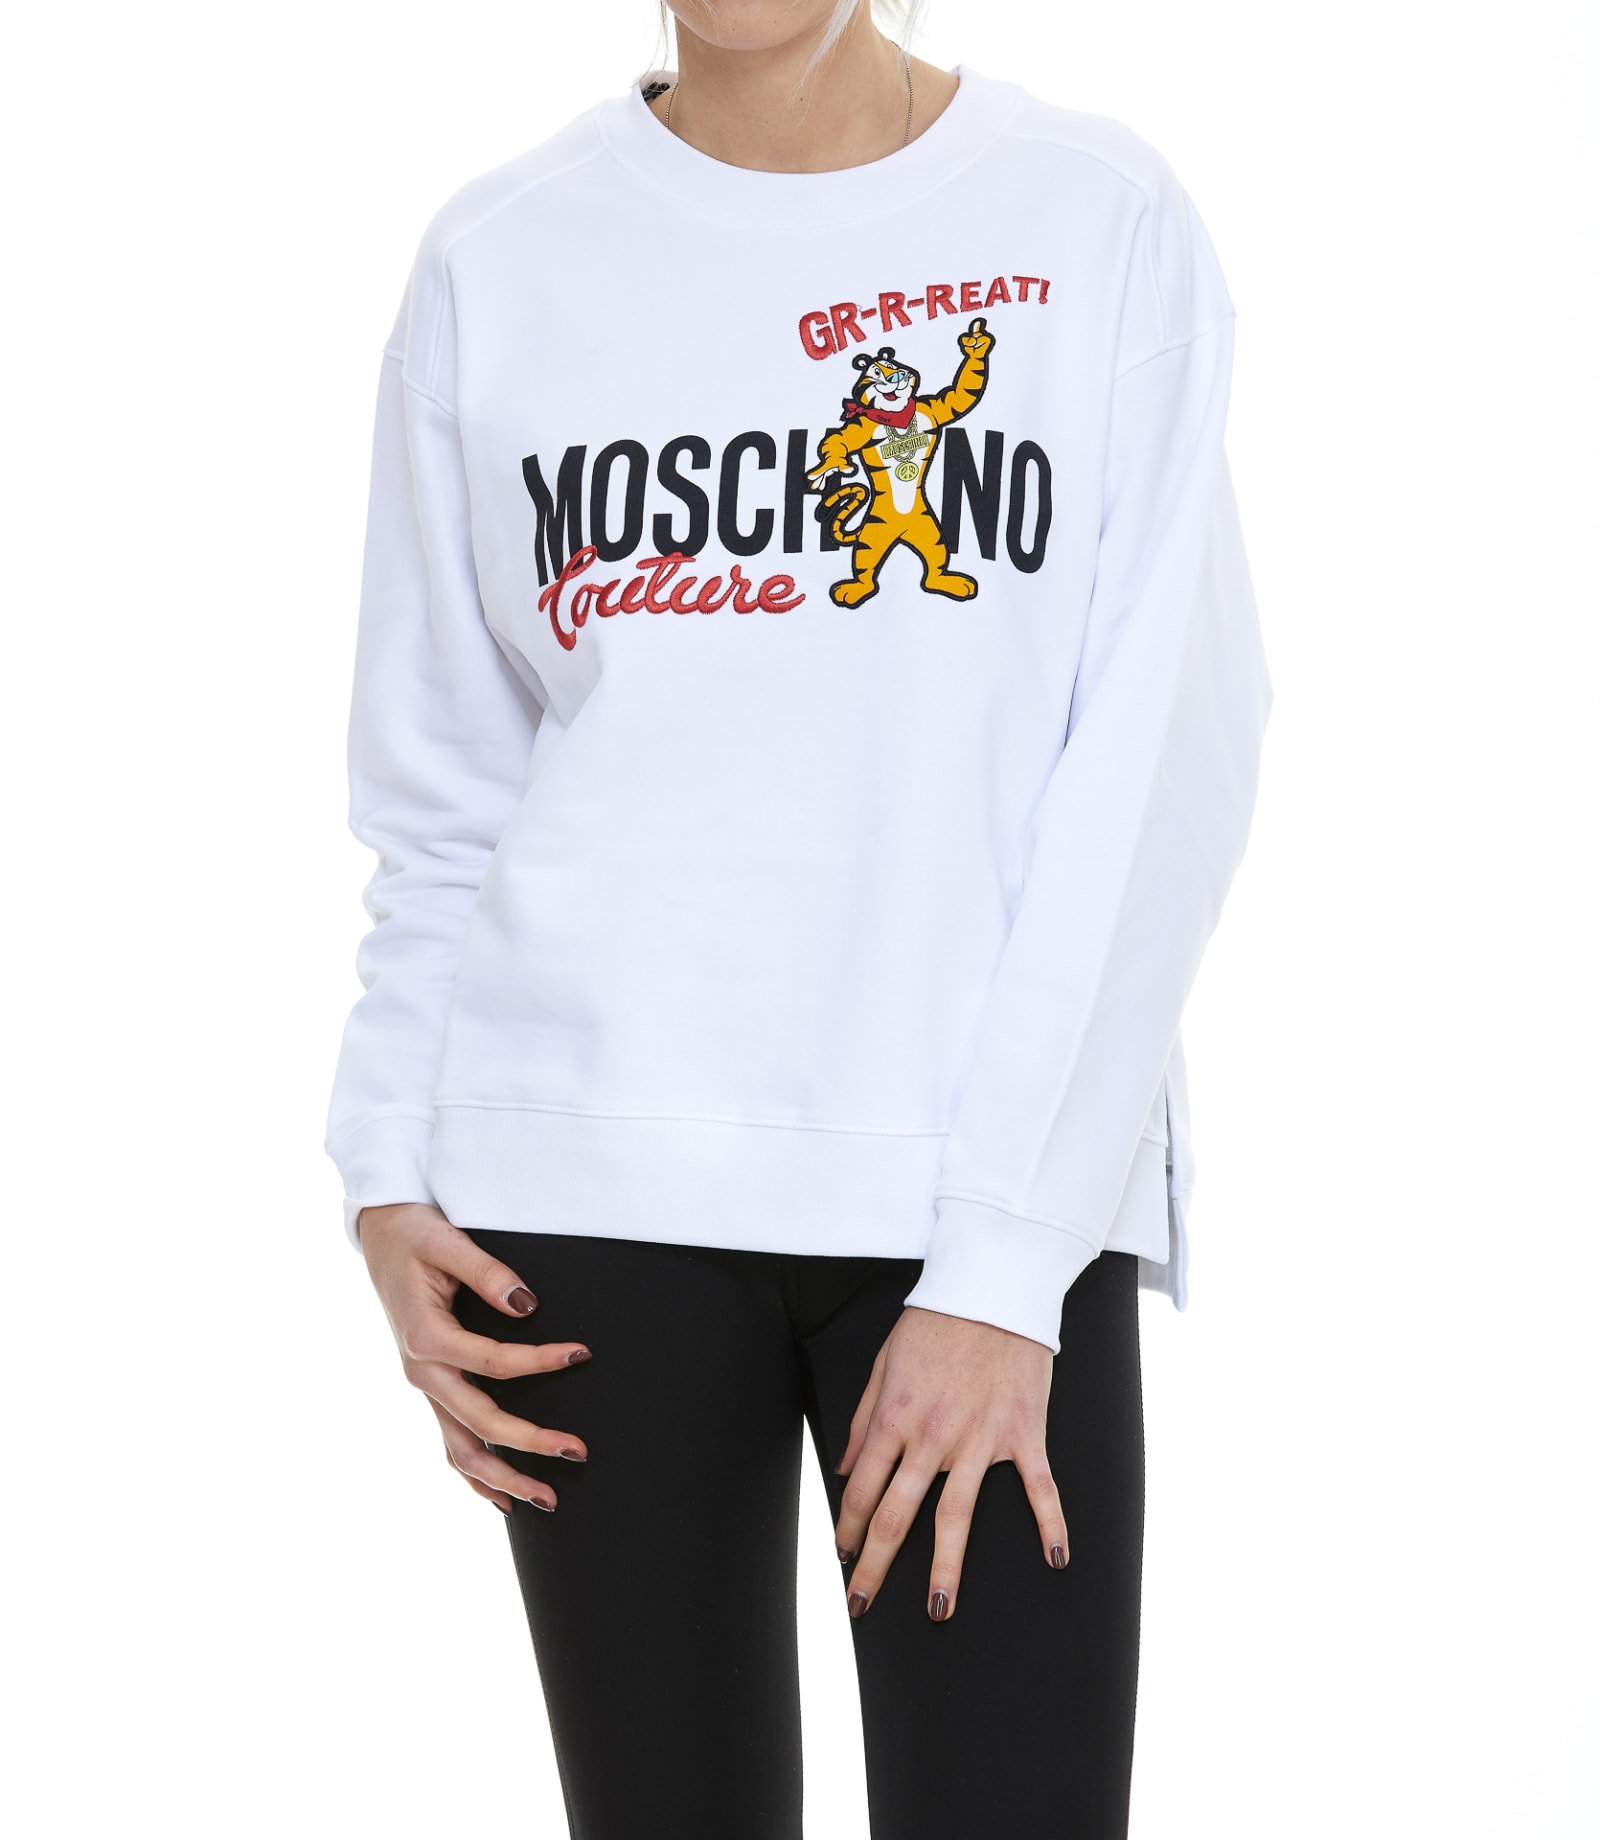 Moschino Chinese New Year Sweater